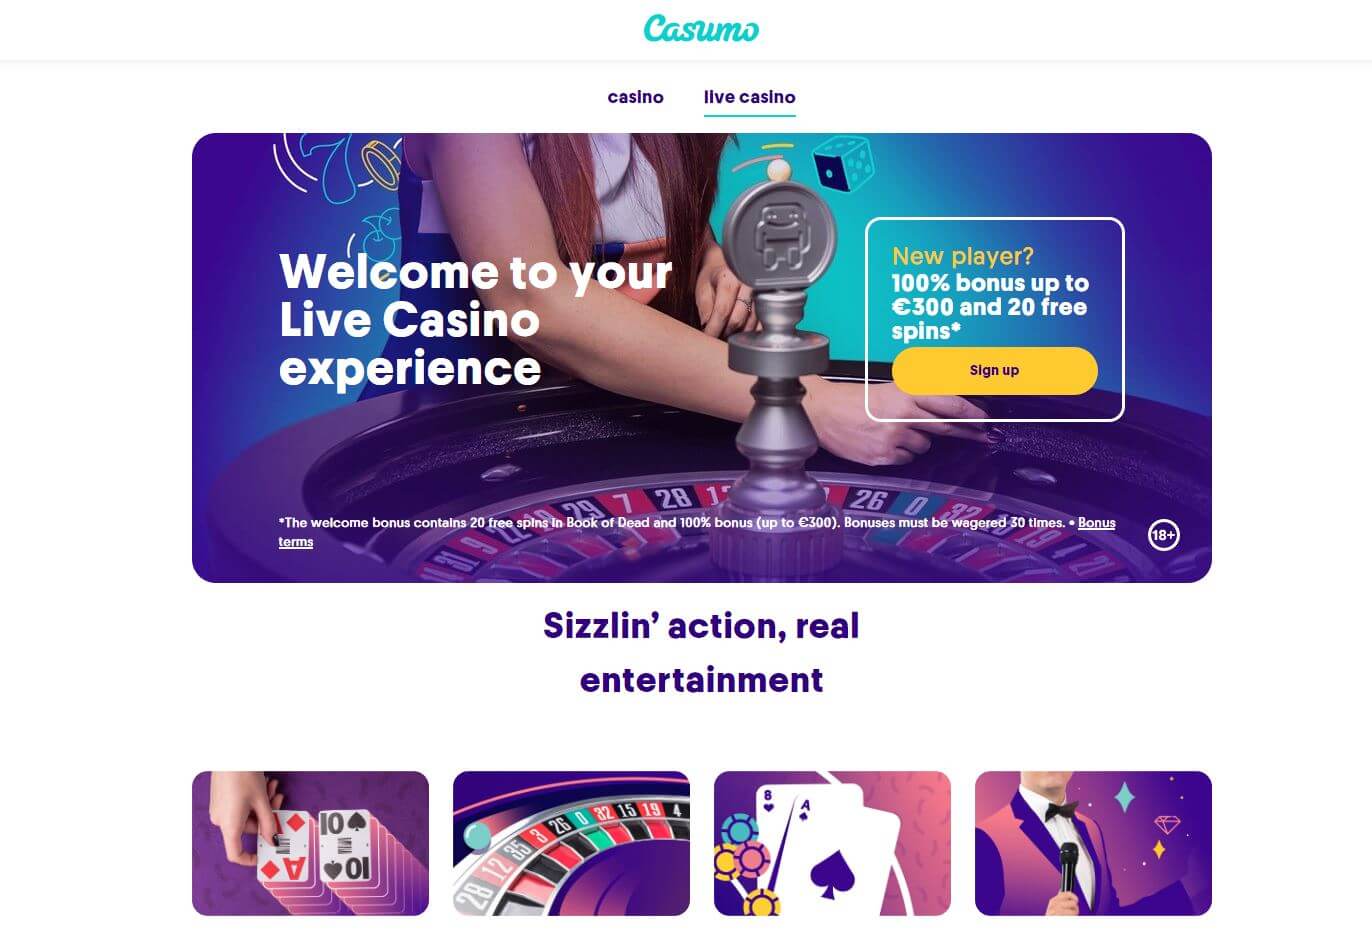 casumo casino review | is casumo legal in india? | bonus